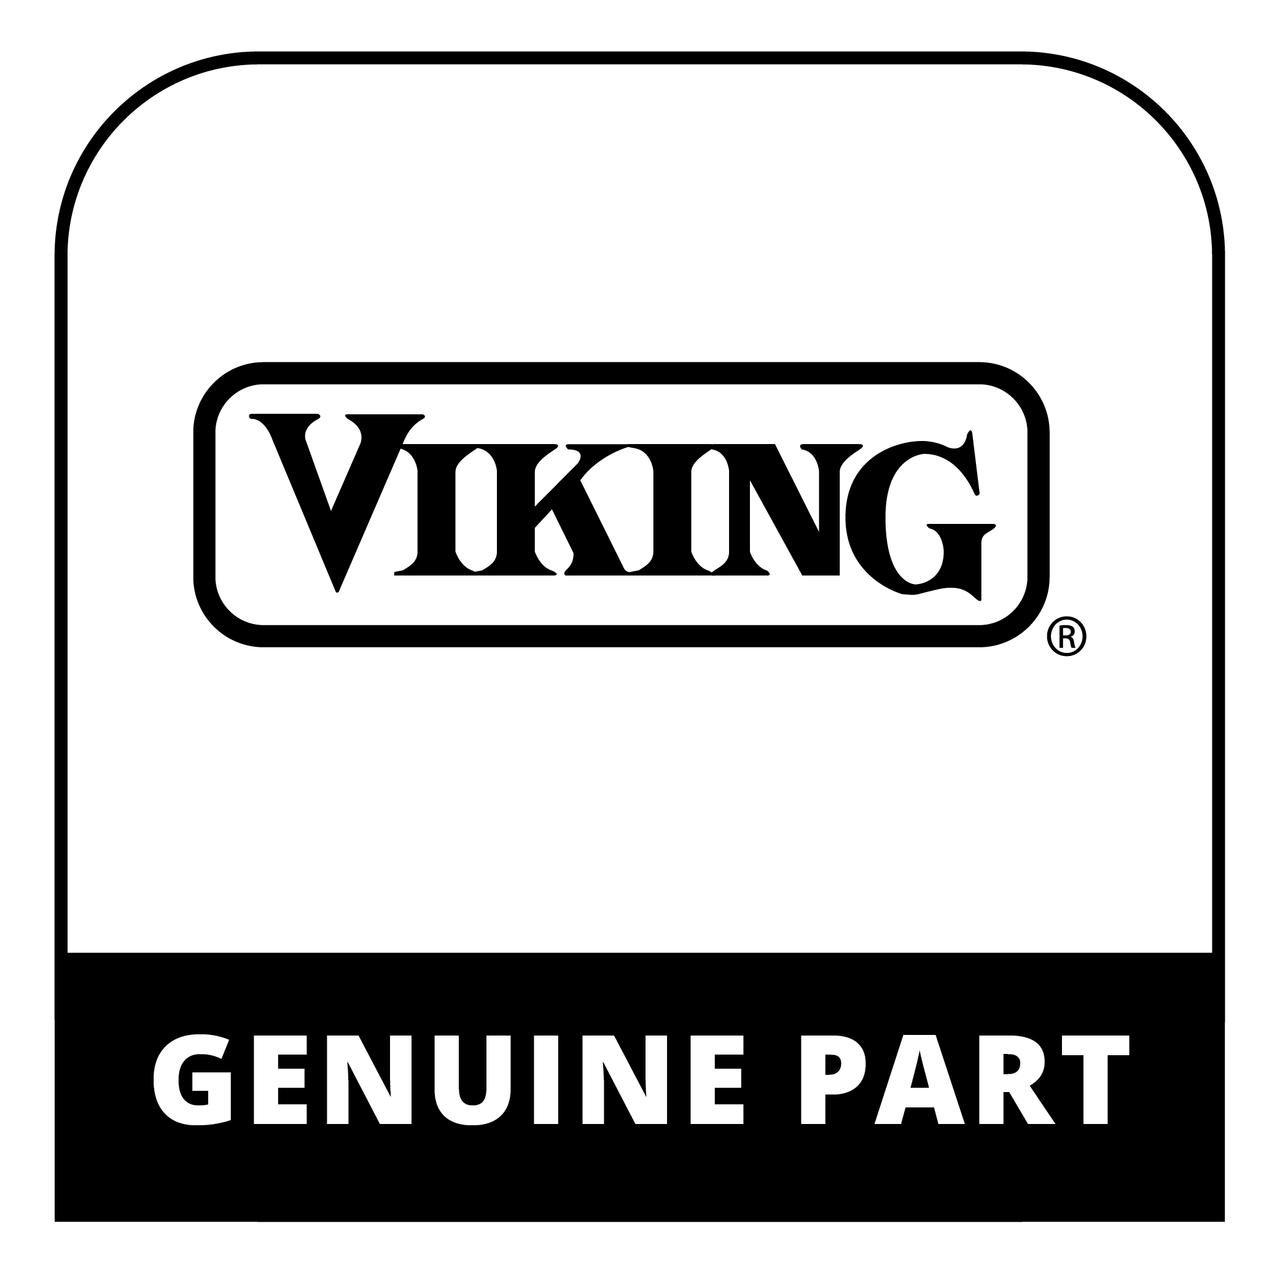 Viking 050812-000 - UPPER TRAY DRAWER HOLDER RT - Genuine Viking Part